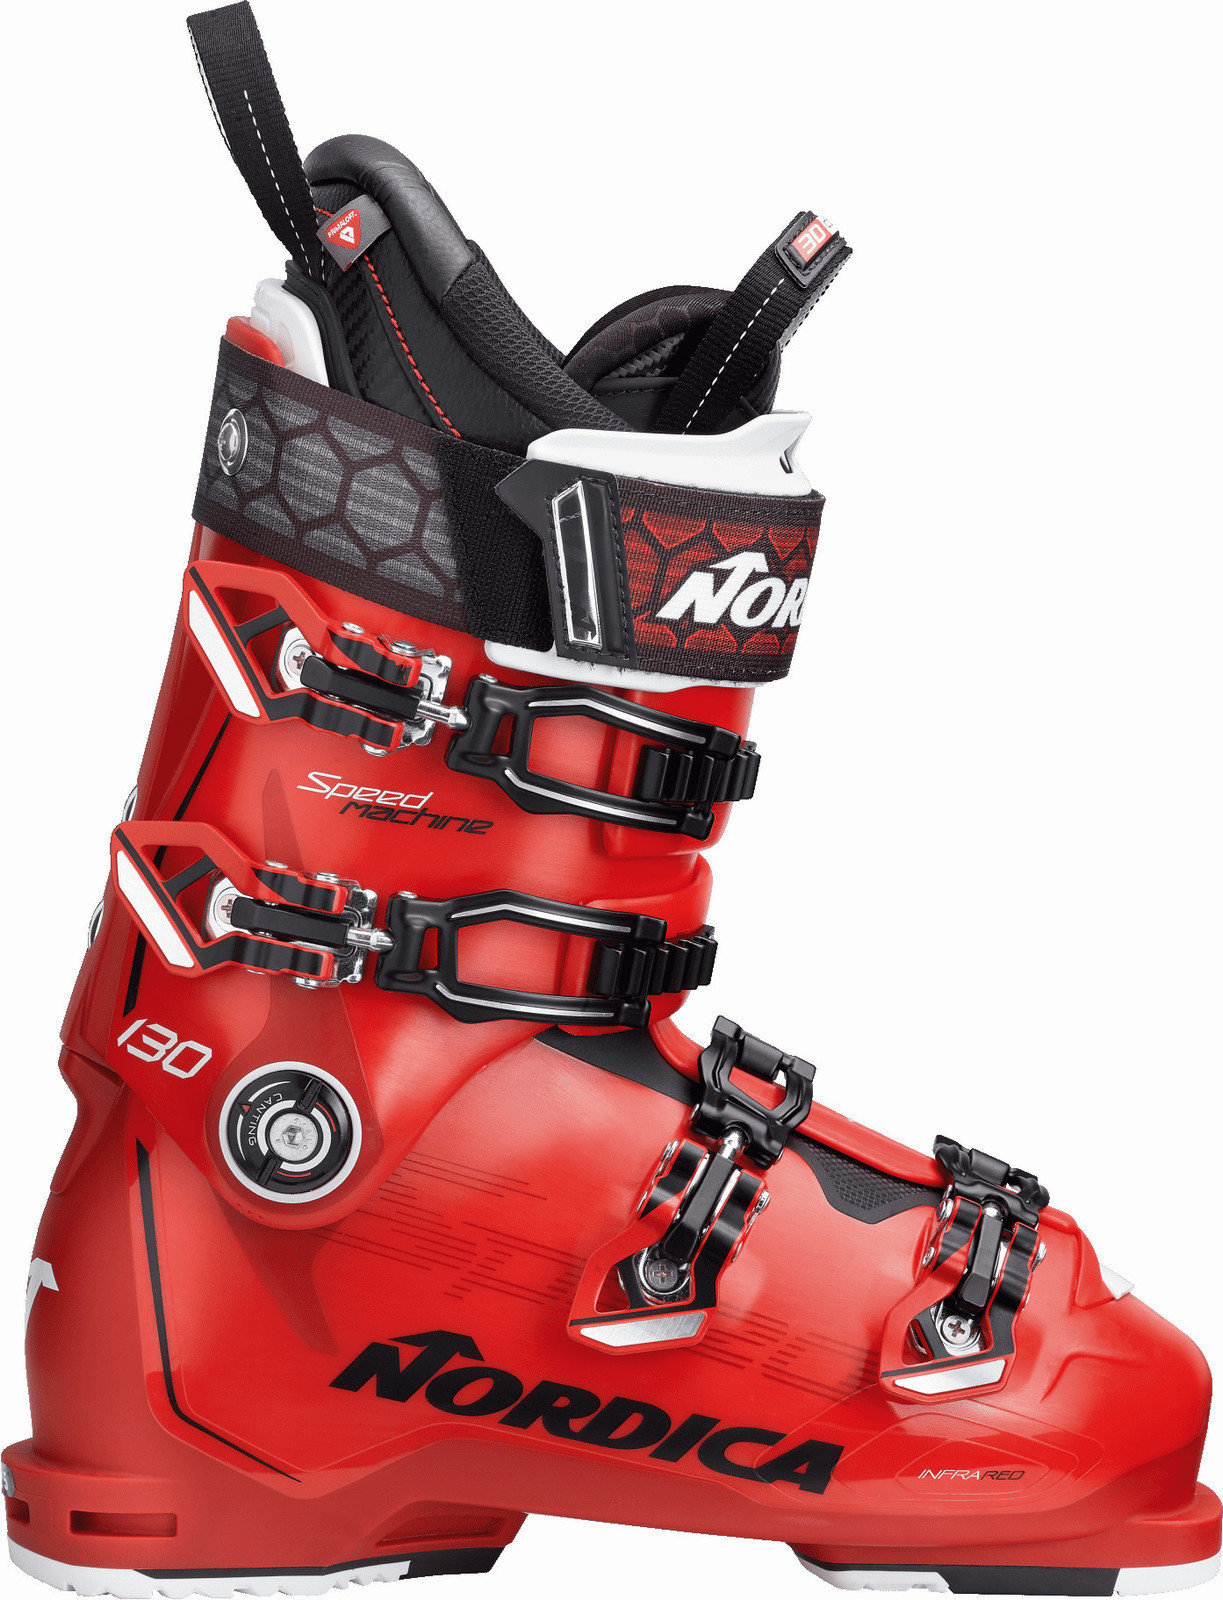 Botas de esqui alpino Nordica Speedmachine 130 Red-Black-White 27.5 18/19